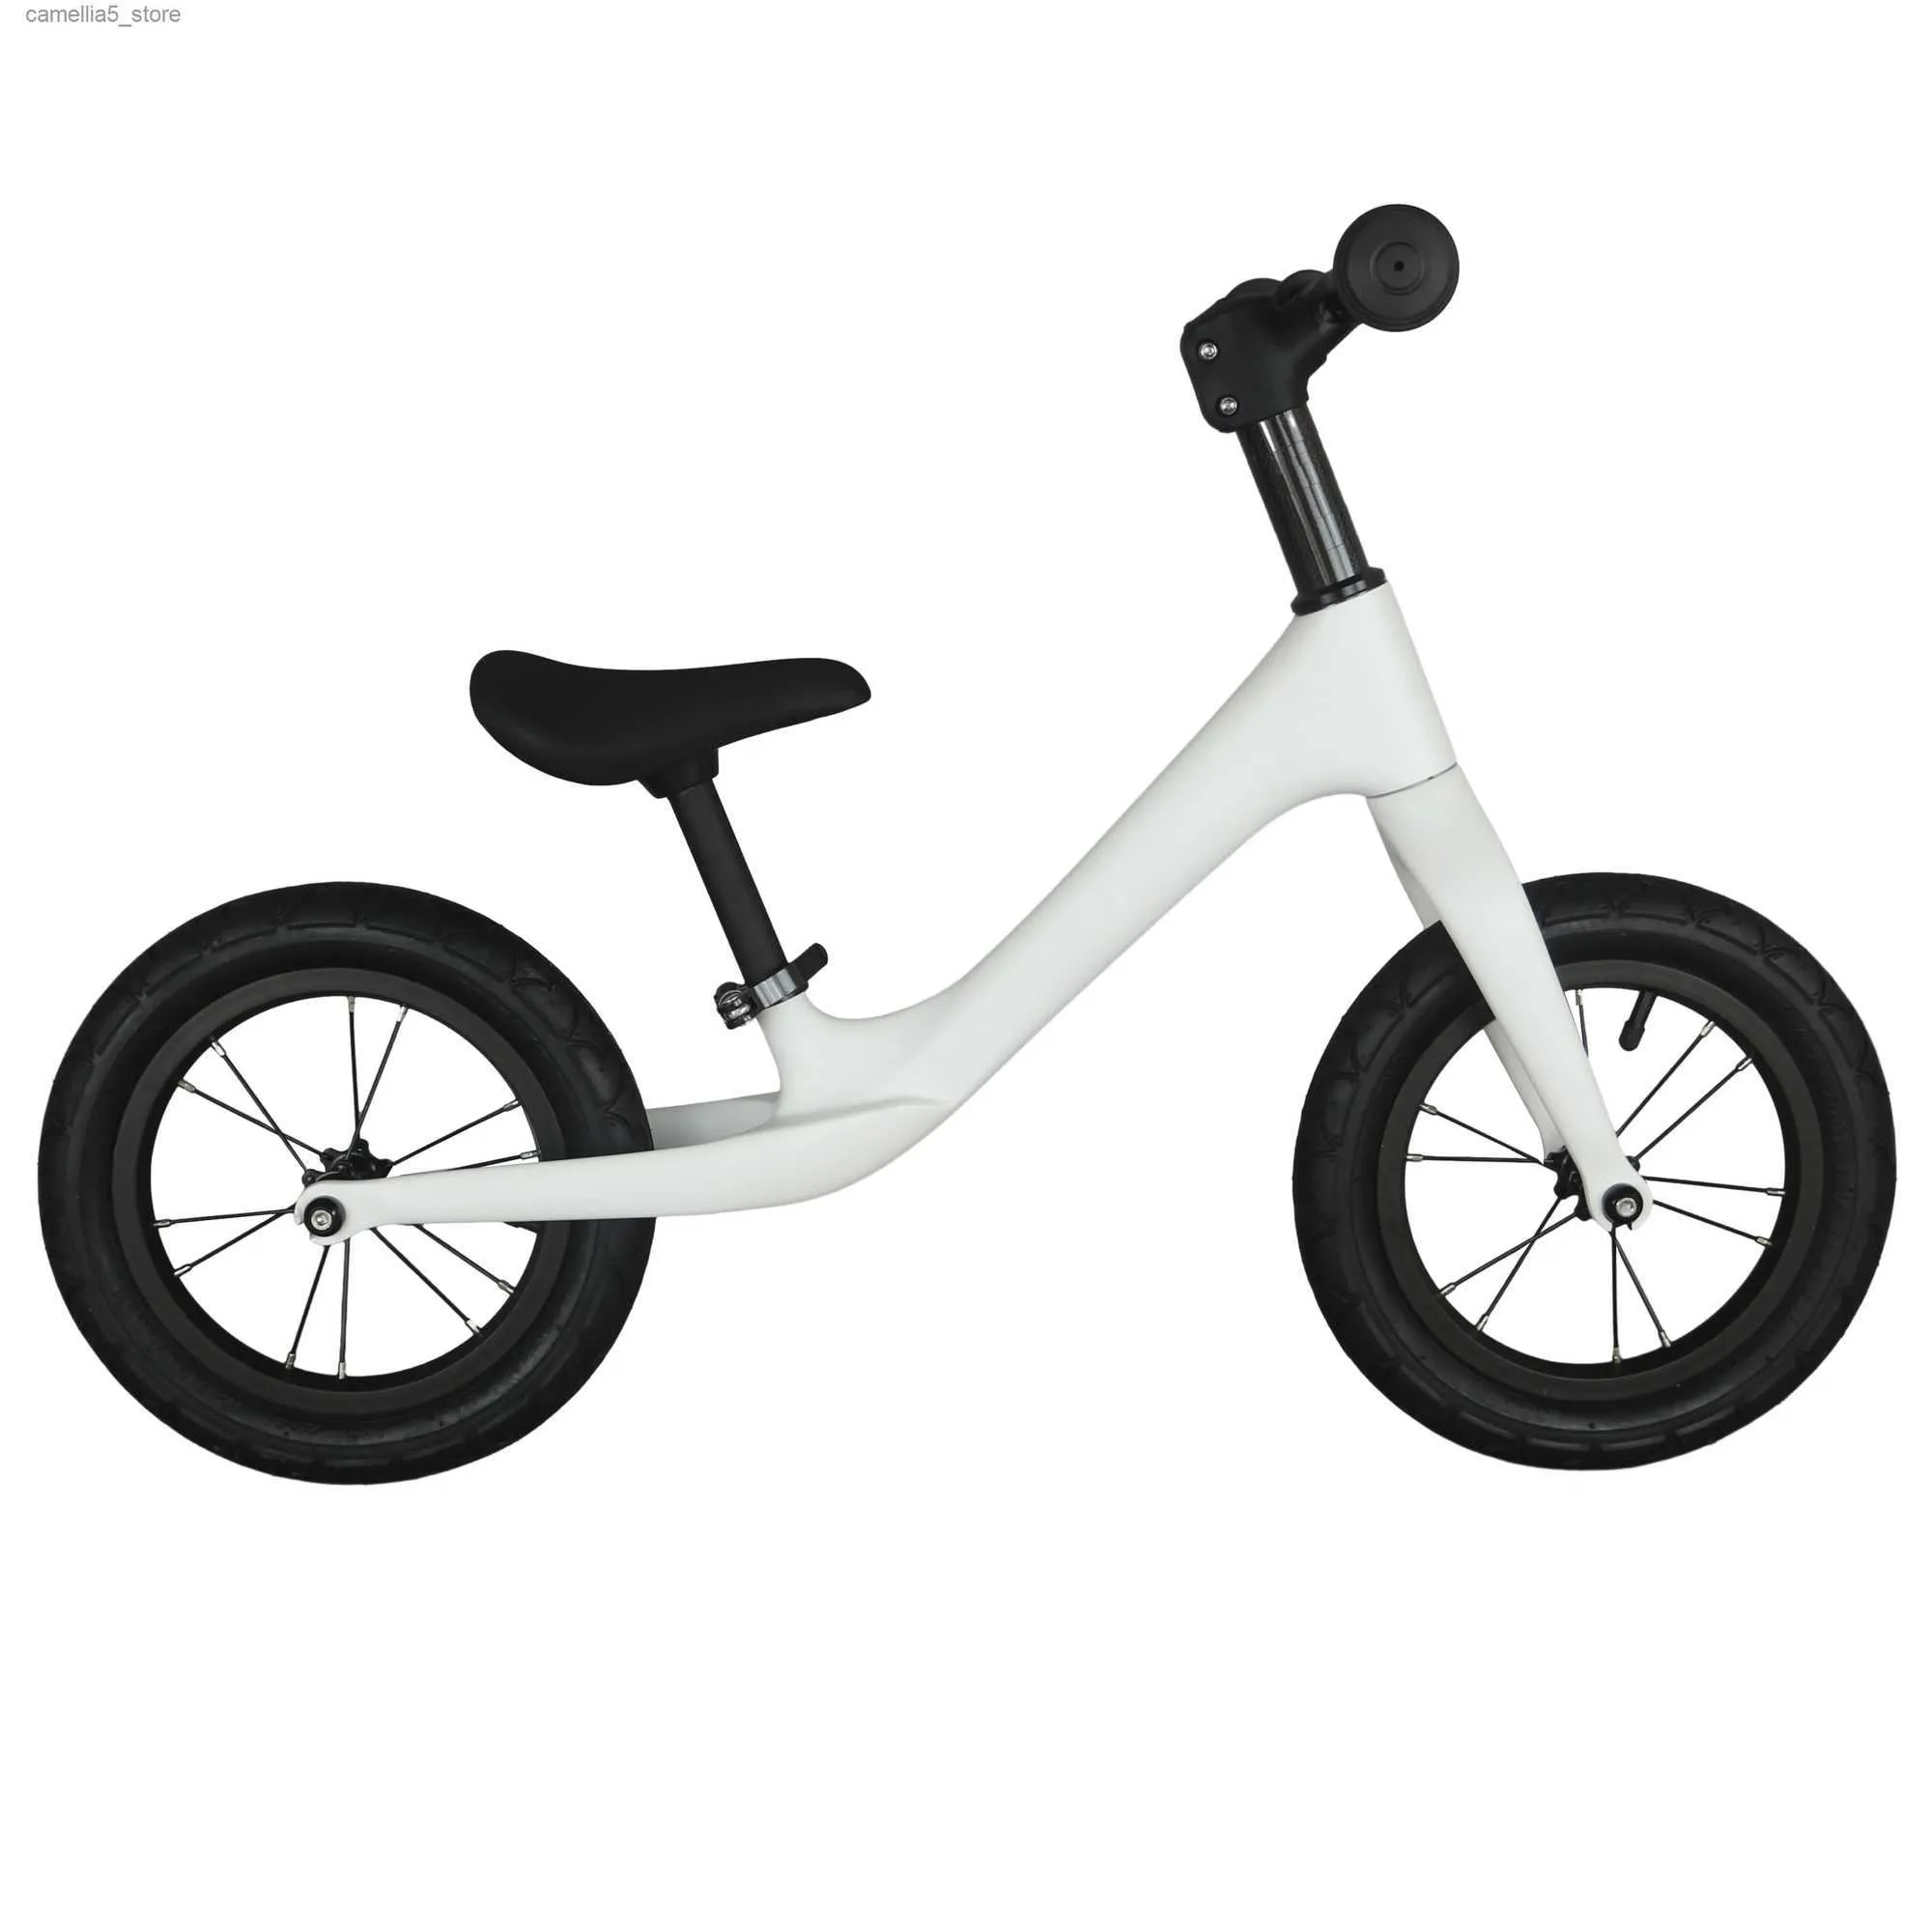 Rowery rowerowe rower bilansowy dla dzieci nadaje się do 2 ~ 6-letnich pełnego pełnego włókna węglowego Rower dla dzieci można dostosować kolor farby Q231018